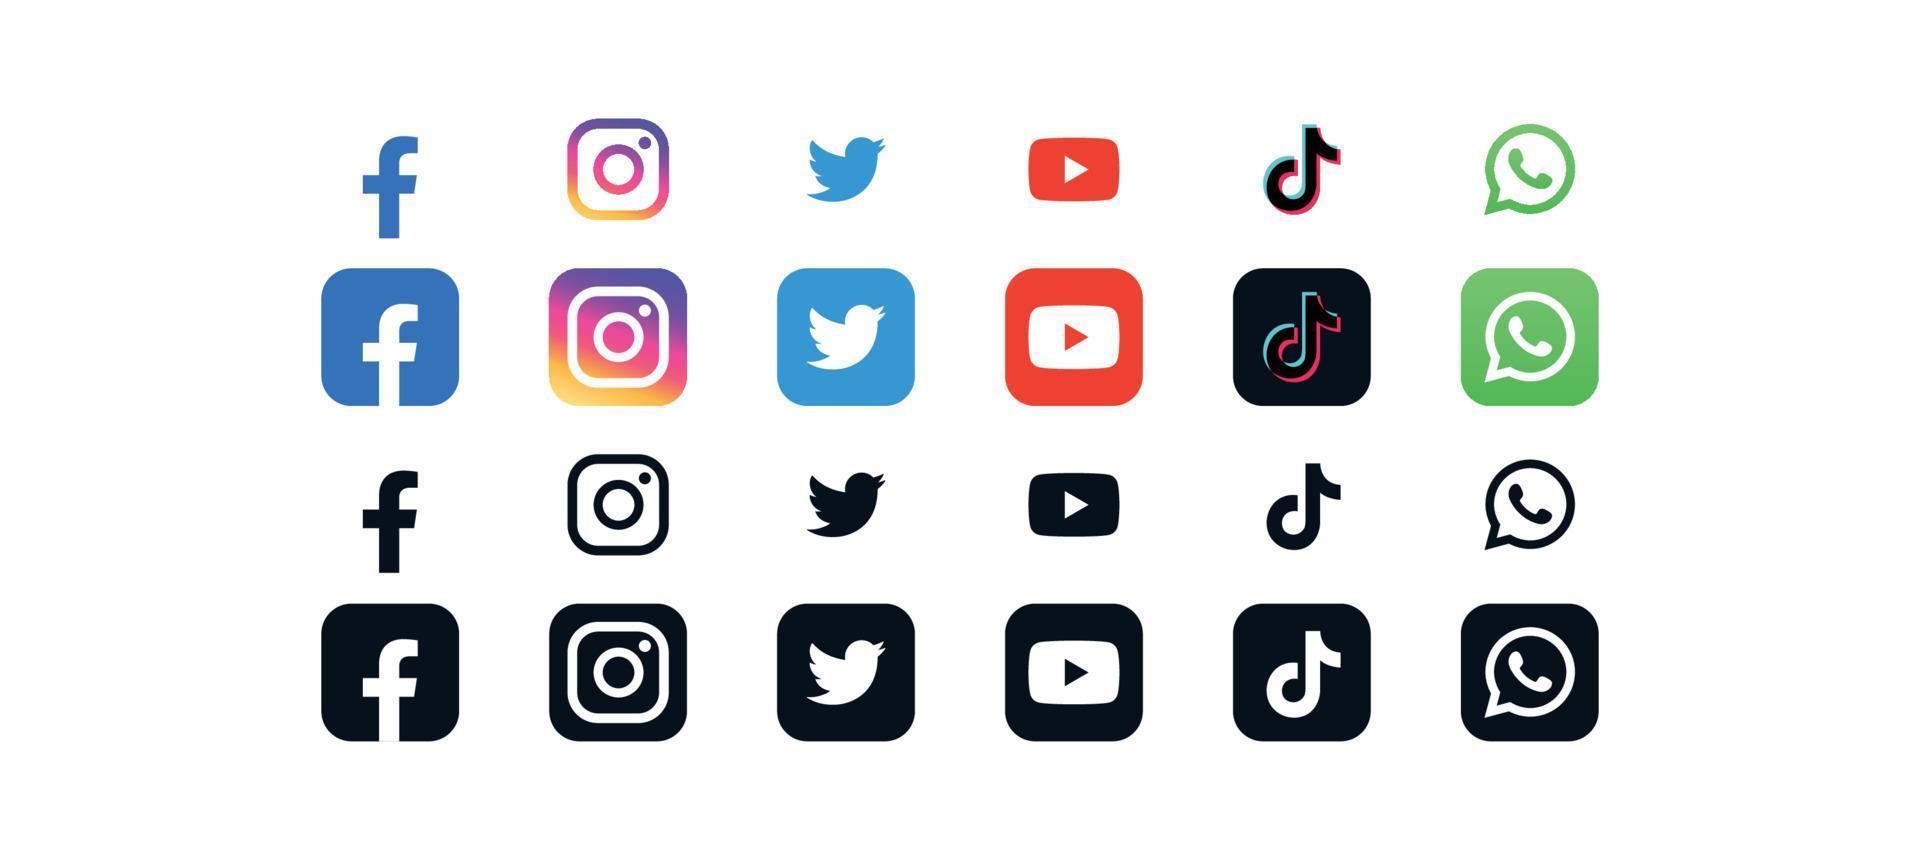 ensemble d'icônes de médias sociaux et applications sociales populaires logos modernes illustration vectorielle plane. vecteur